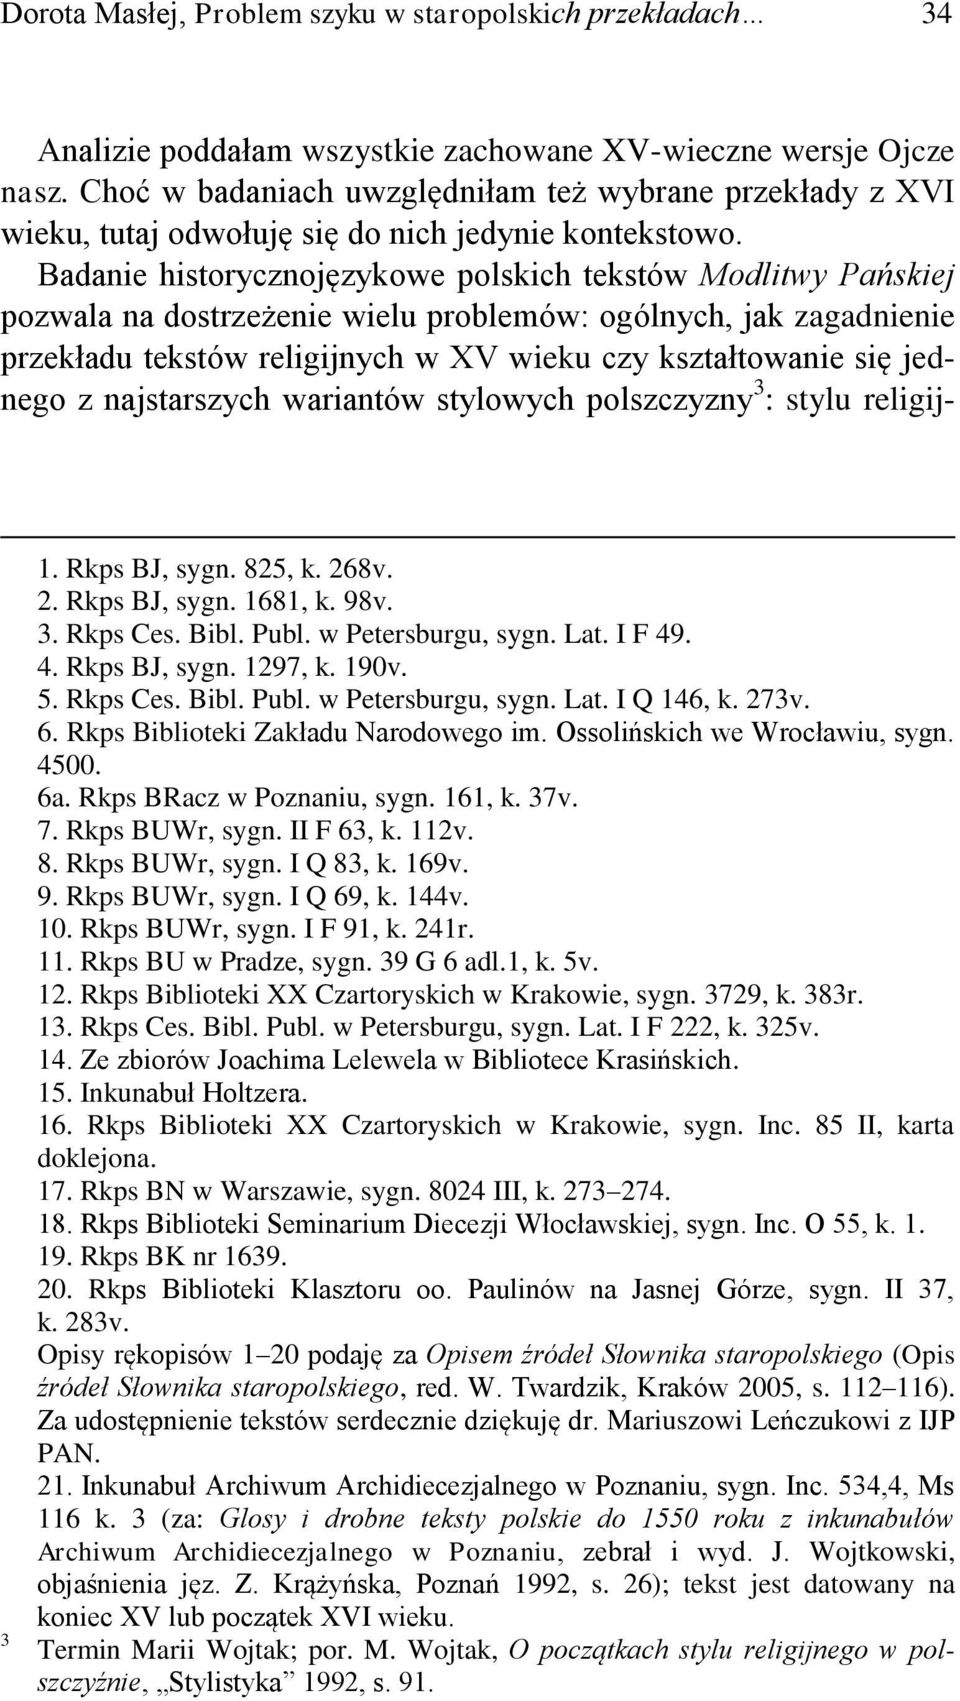 Badanie historycznojęzykowe polskich tekstów Modlitwy Pańskiej pozwala na dostrzeżenie wielu problemów: ogólnych, jak zagadnienie przekładu tekstów religijnych w XV wieku czy kształtowanie się